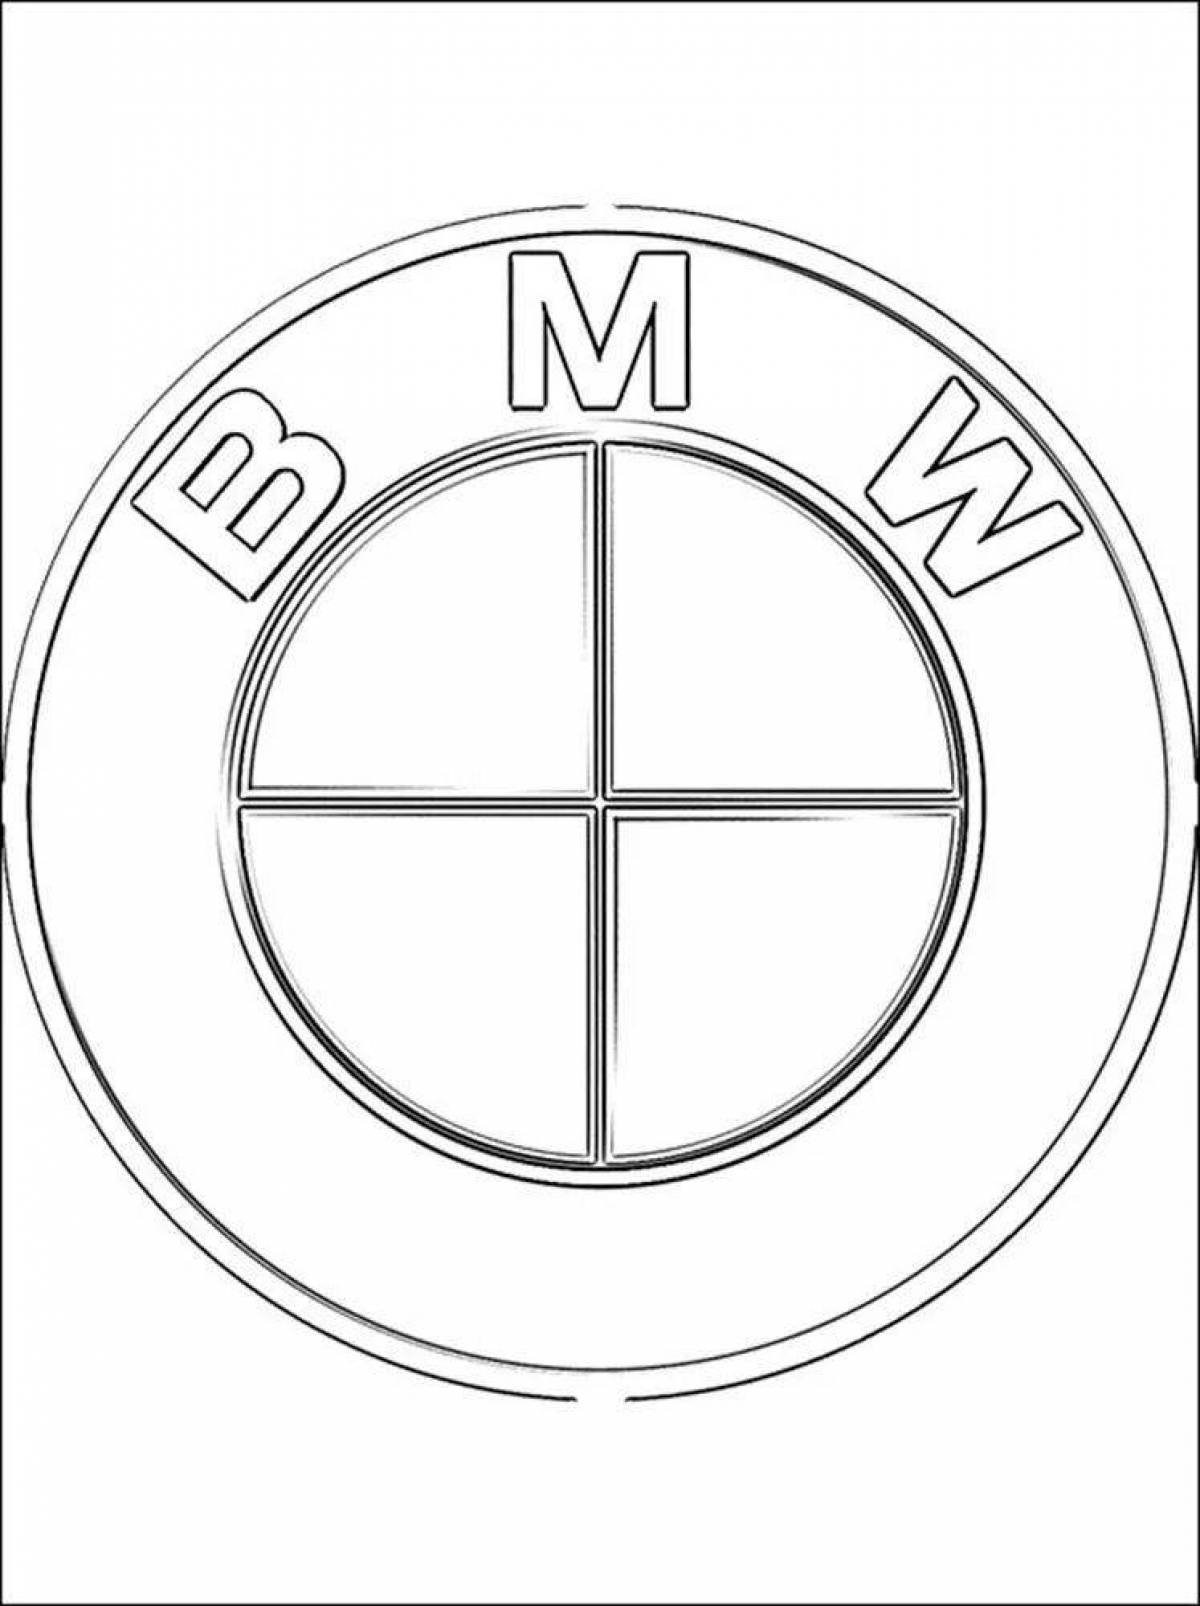 Привлекательная страница раскраски значка bmw